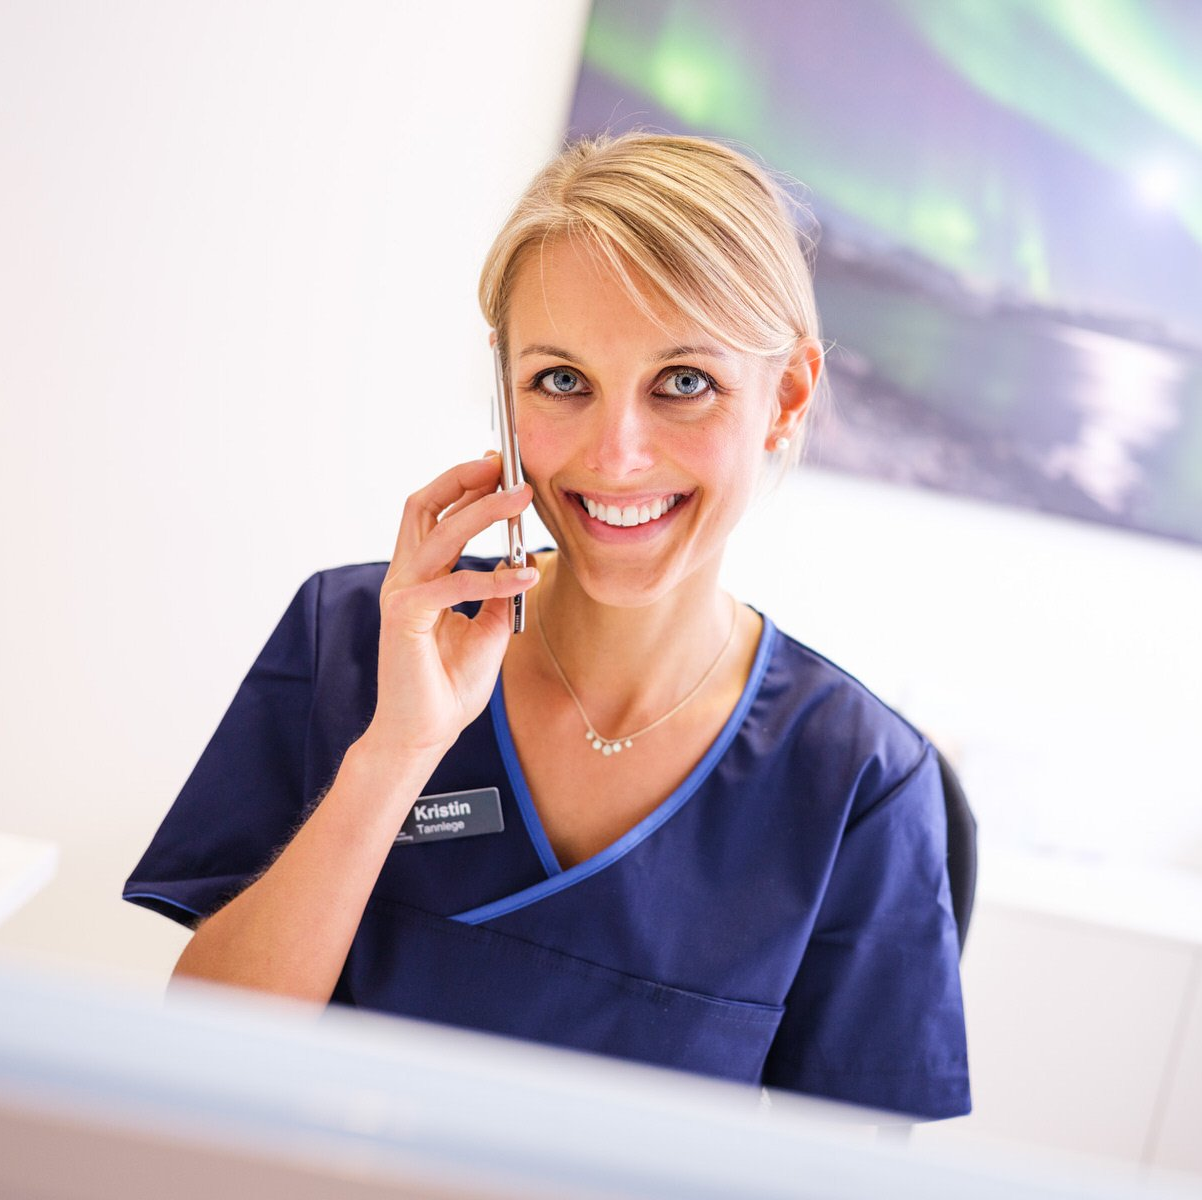 Tannlege Kristin snakker i telefonen